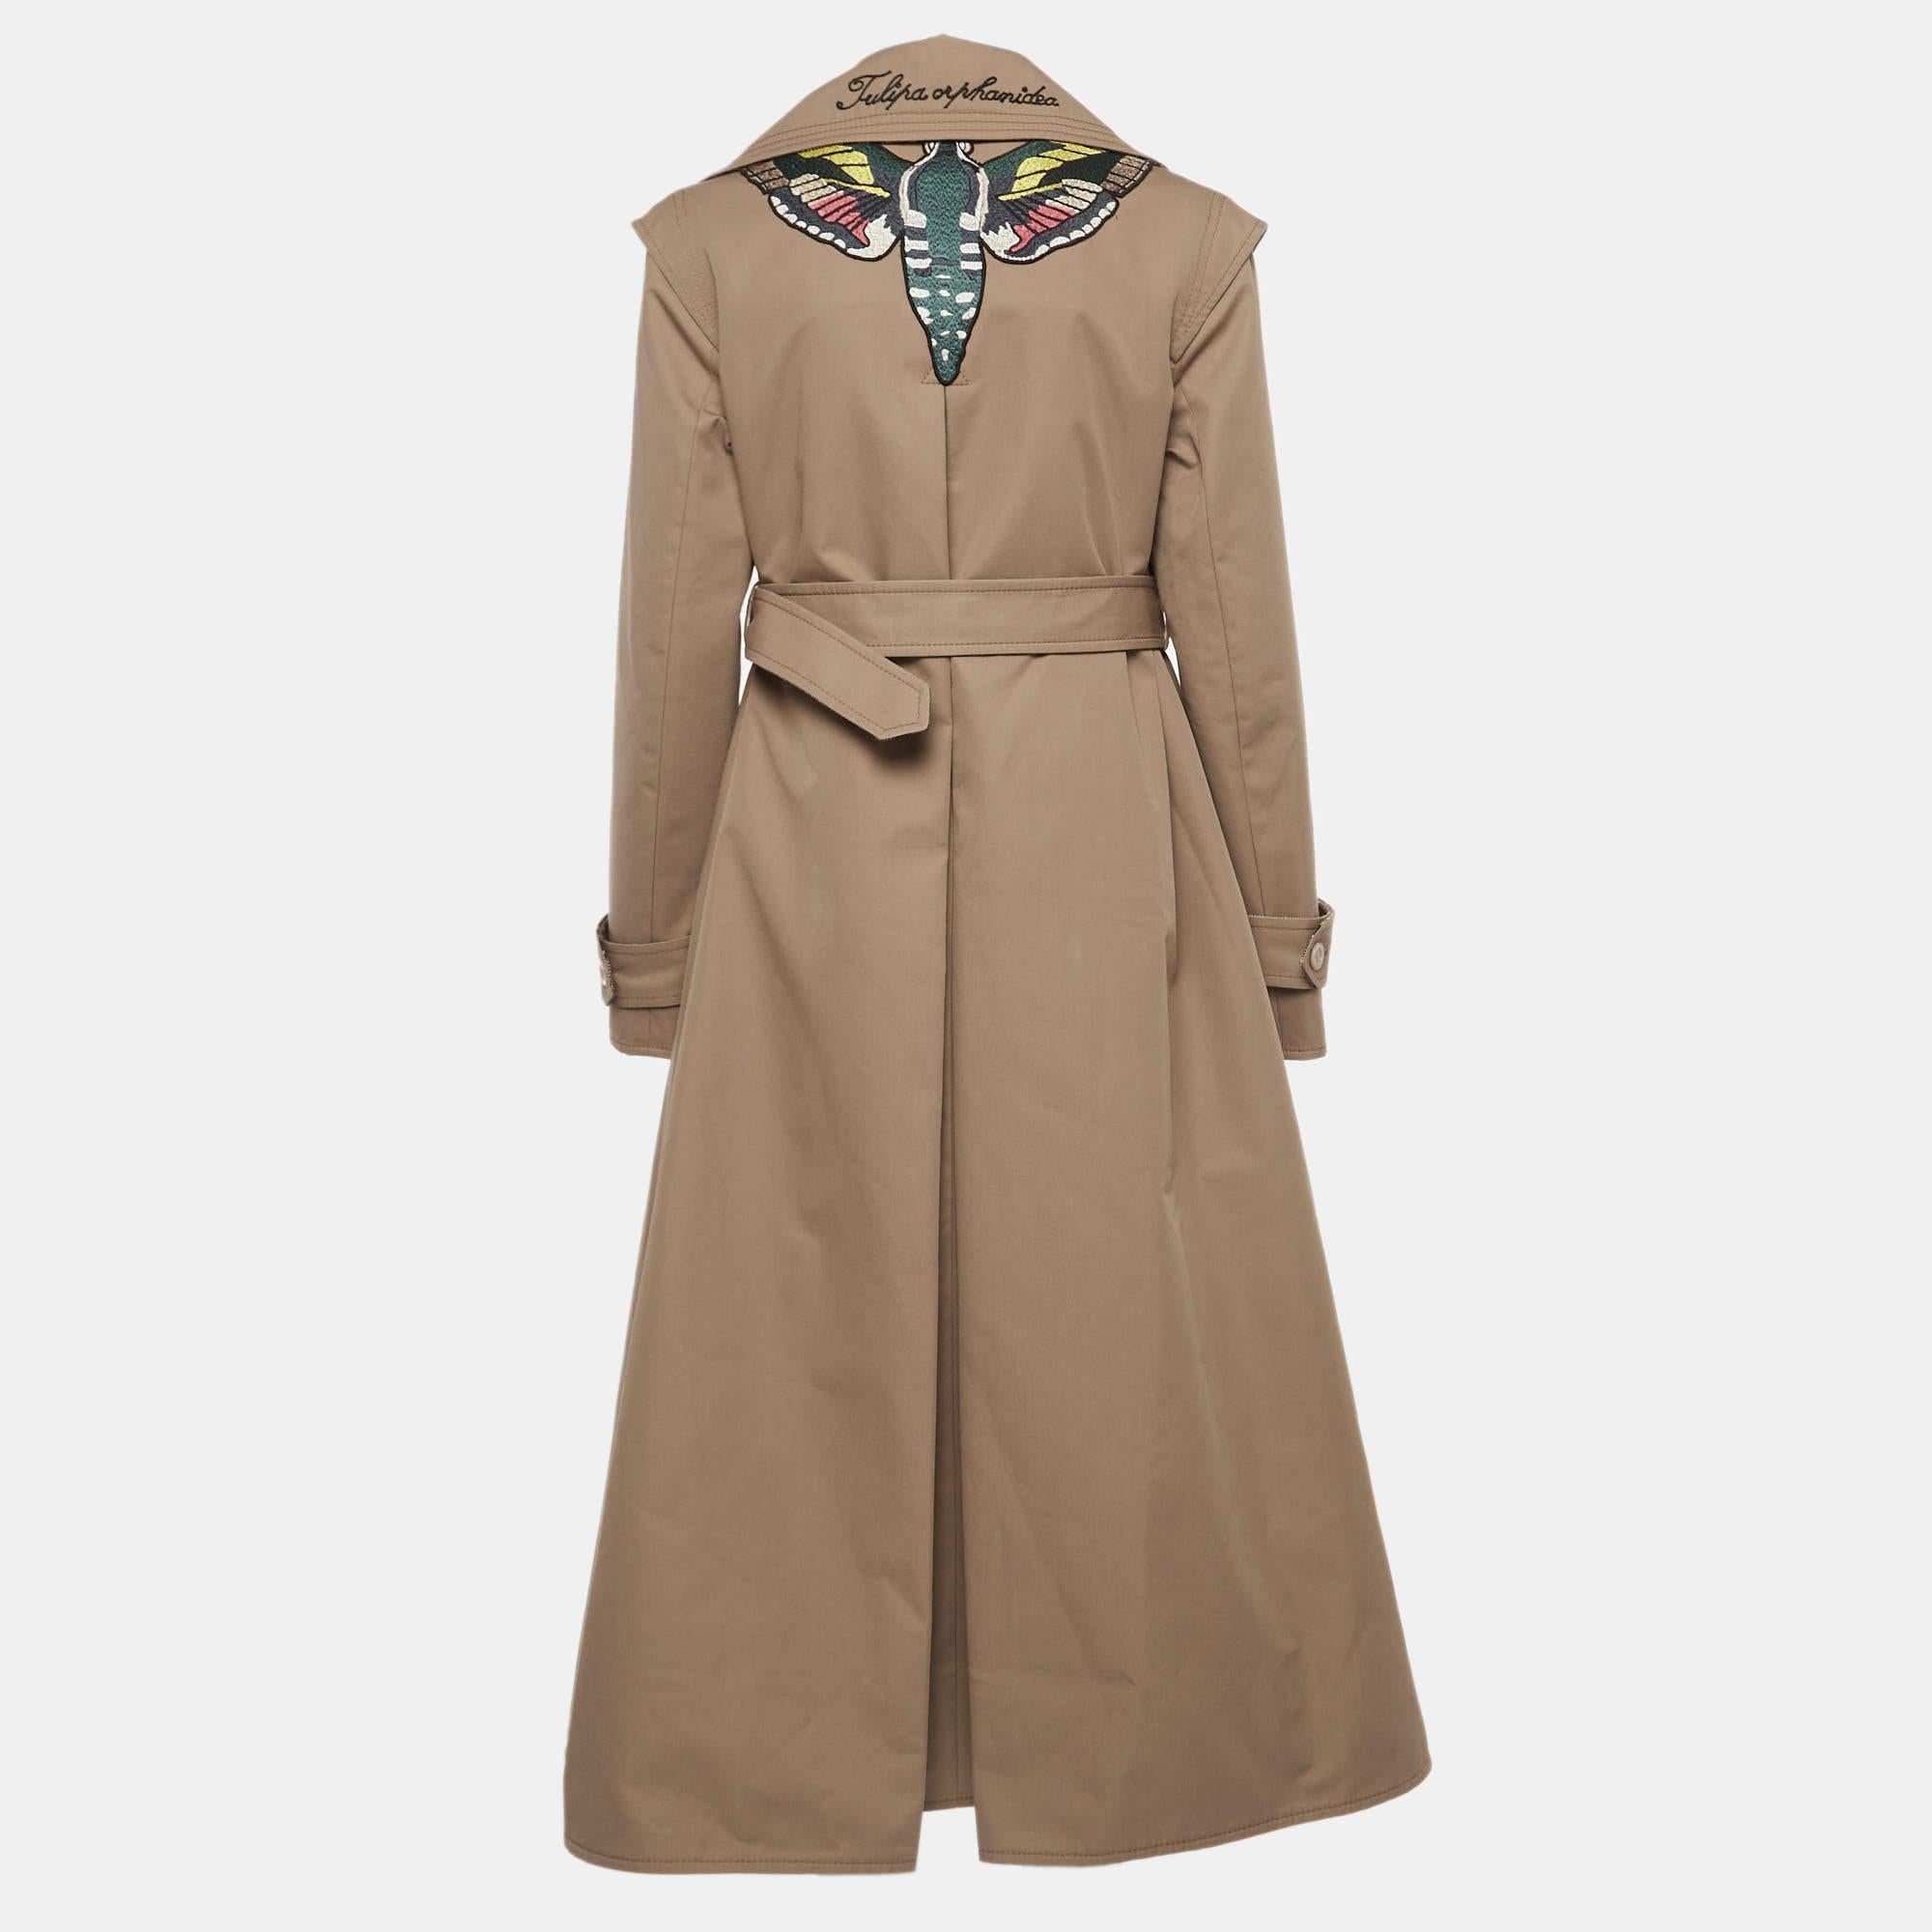 Der Trenchcoat von Gucci ist ein luxuriöses und ikonisches Kleidungsstück. Es ist aus hochwertigem Gabardine gefertigt und mit einer exquisiten Schmetterlingsstickerei auf der Rückseite versehen, die ihm einen skurrilen Touch verleiht. Der